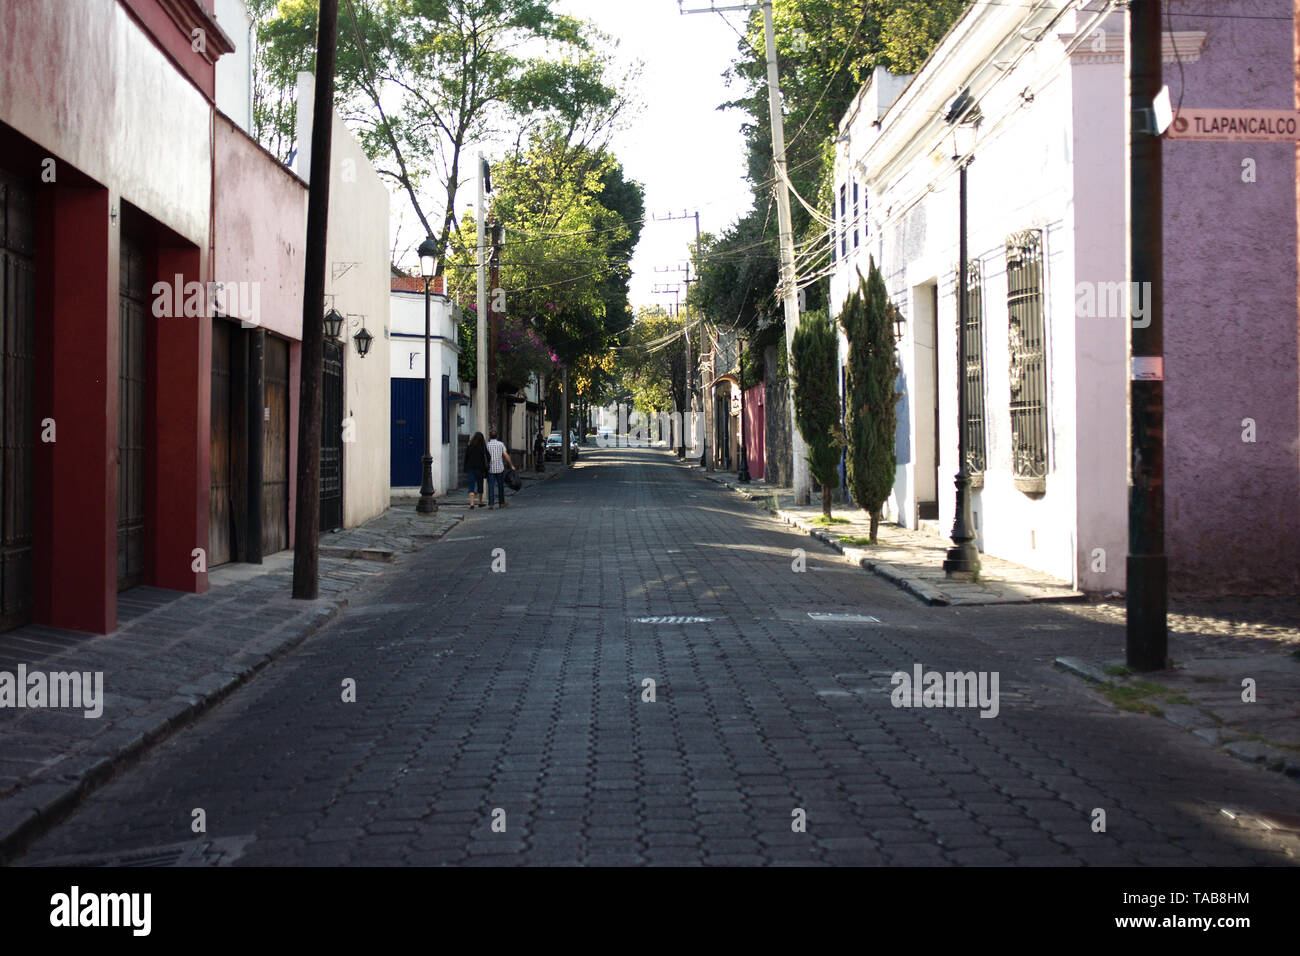 Mexiko City, Mexiko - 2019: Eine traditionelle Straße mit Kopfsteinpflaster in der coyoacan Bezirk Altstadt, einem berühmten touristischen Gegend. Stockfoto